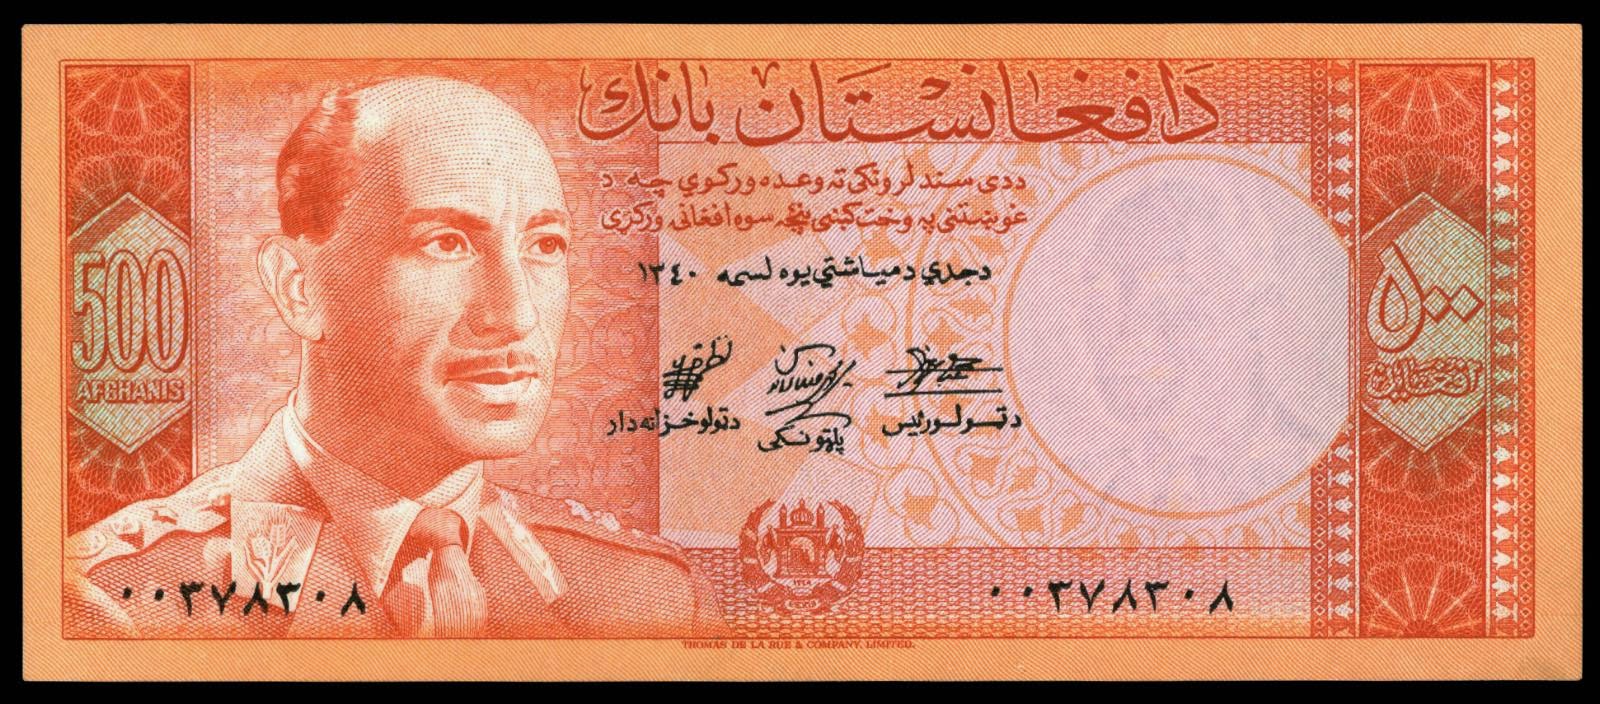 500 Afghanis banknote 1961 King Mohammed Zahir Shah